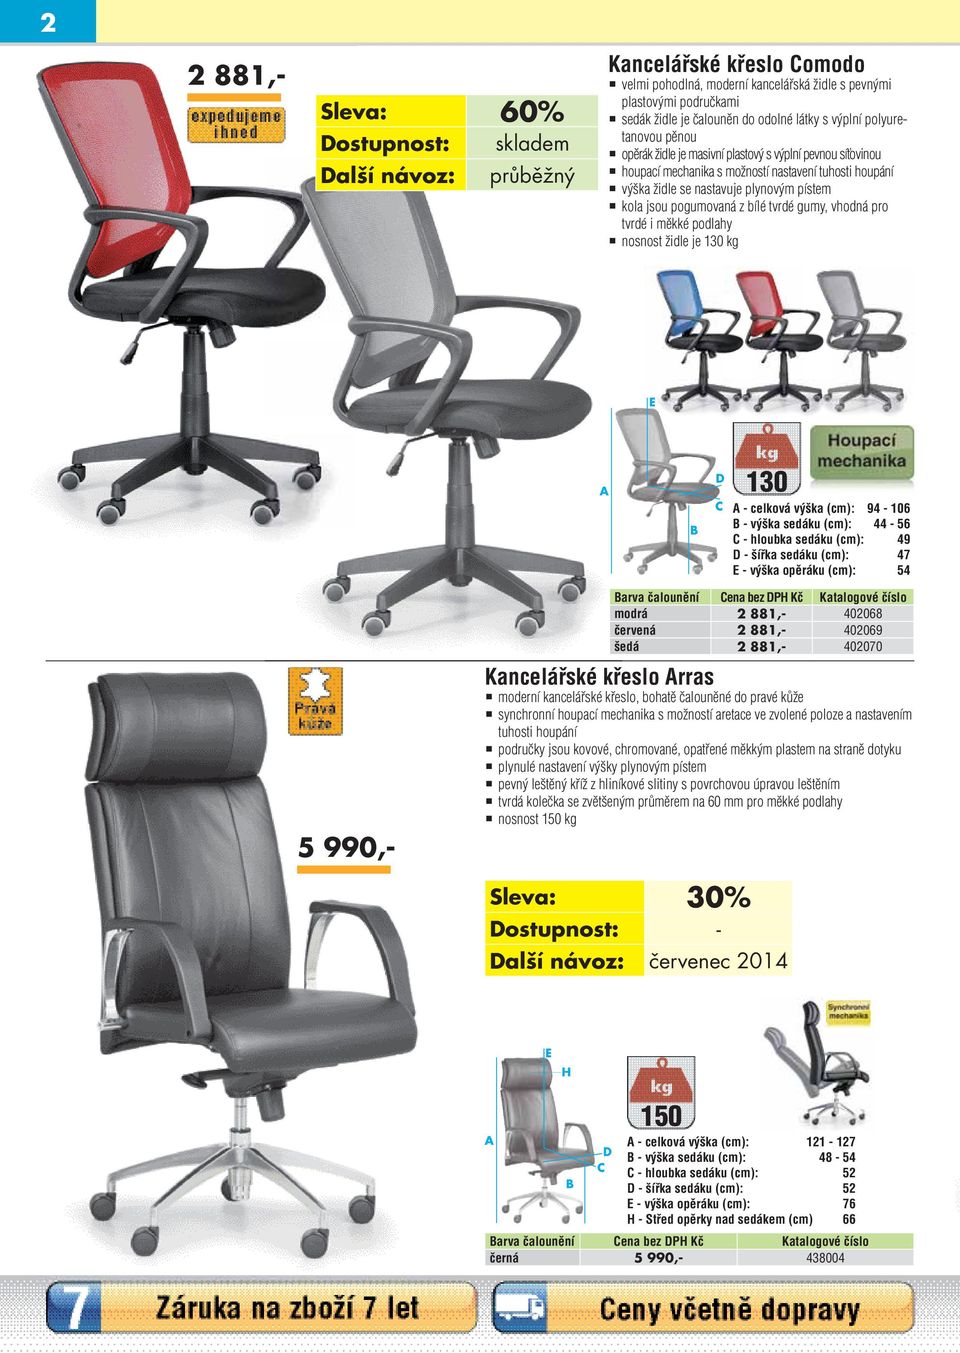 tvrdé i měkké podlahy nosnost židle je 130 kg E A B D C 130 A - celková výška (cm): 94-106 B - výška sedáku (cm): 44-56 C - hloubka sedáku (cm): 49 D - šířka sedáku (cm): 47 E - výška opěráku (cm):